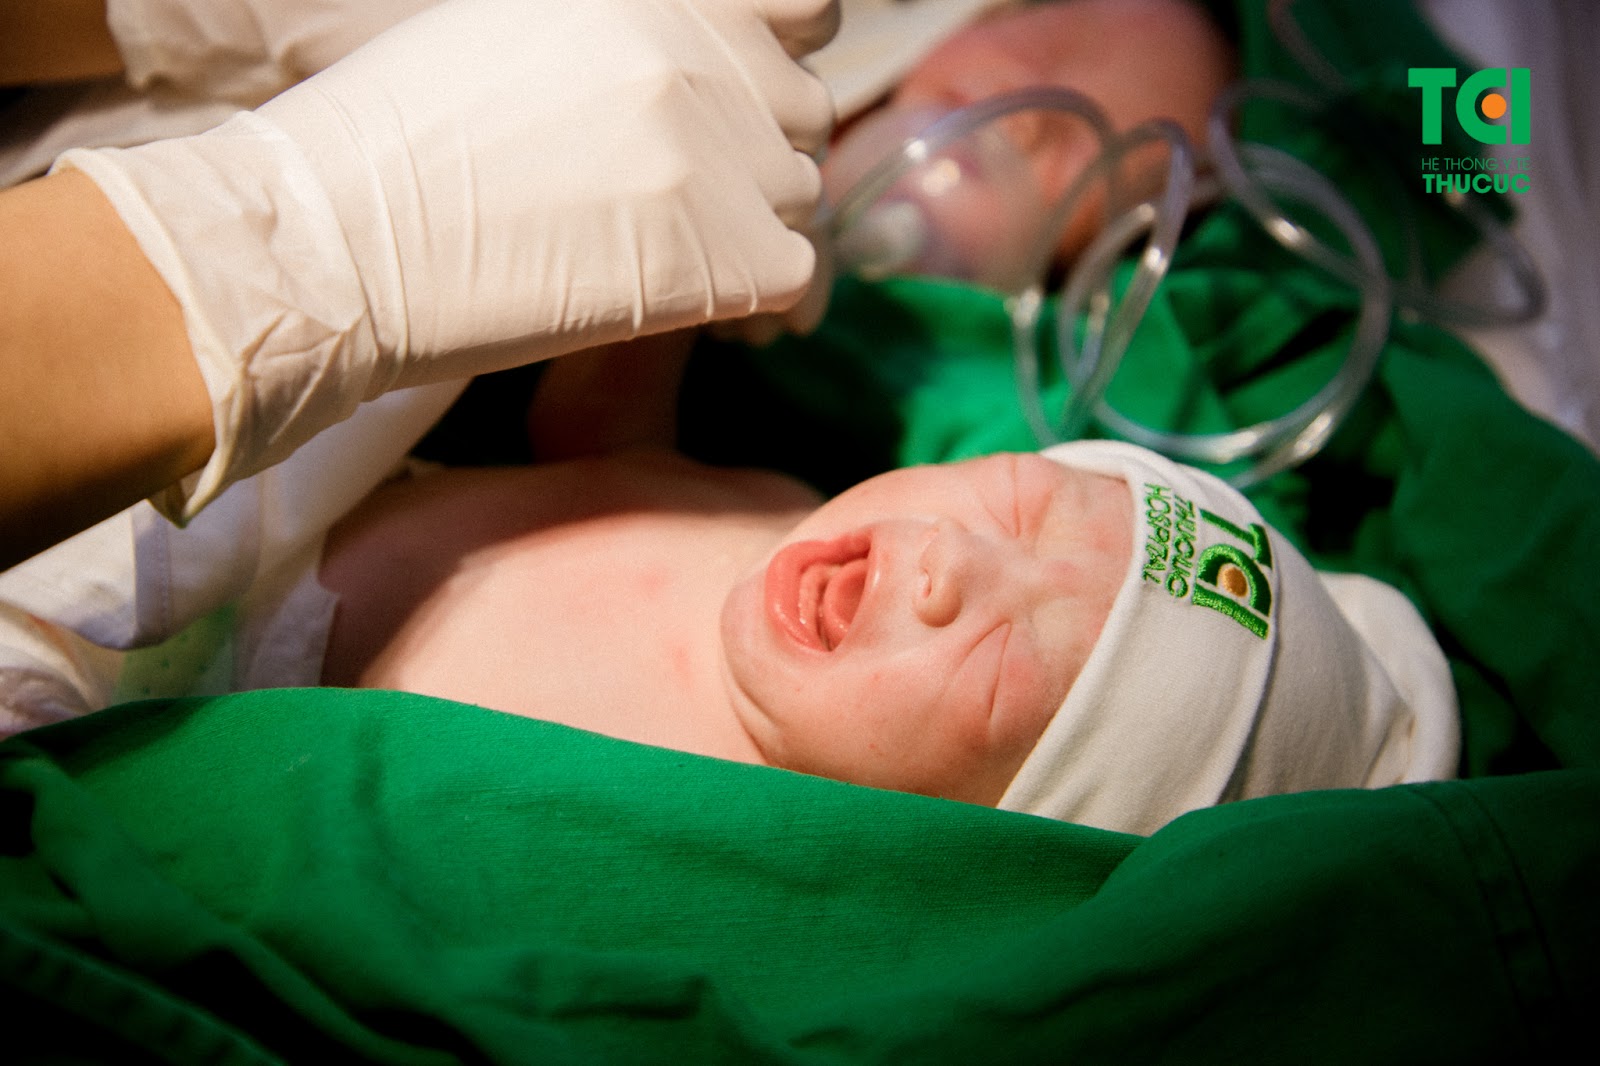 Cặp song thai được kiểm tra sức khỏe ngay sau khi chào đời tại Bệnh viện ĐKQT Thu Cúc TCI